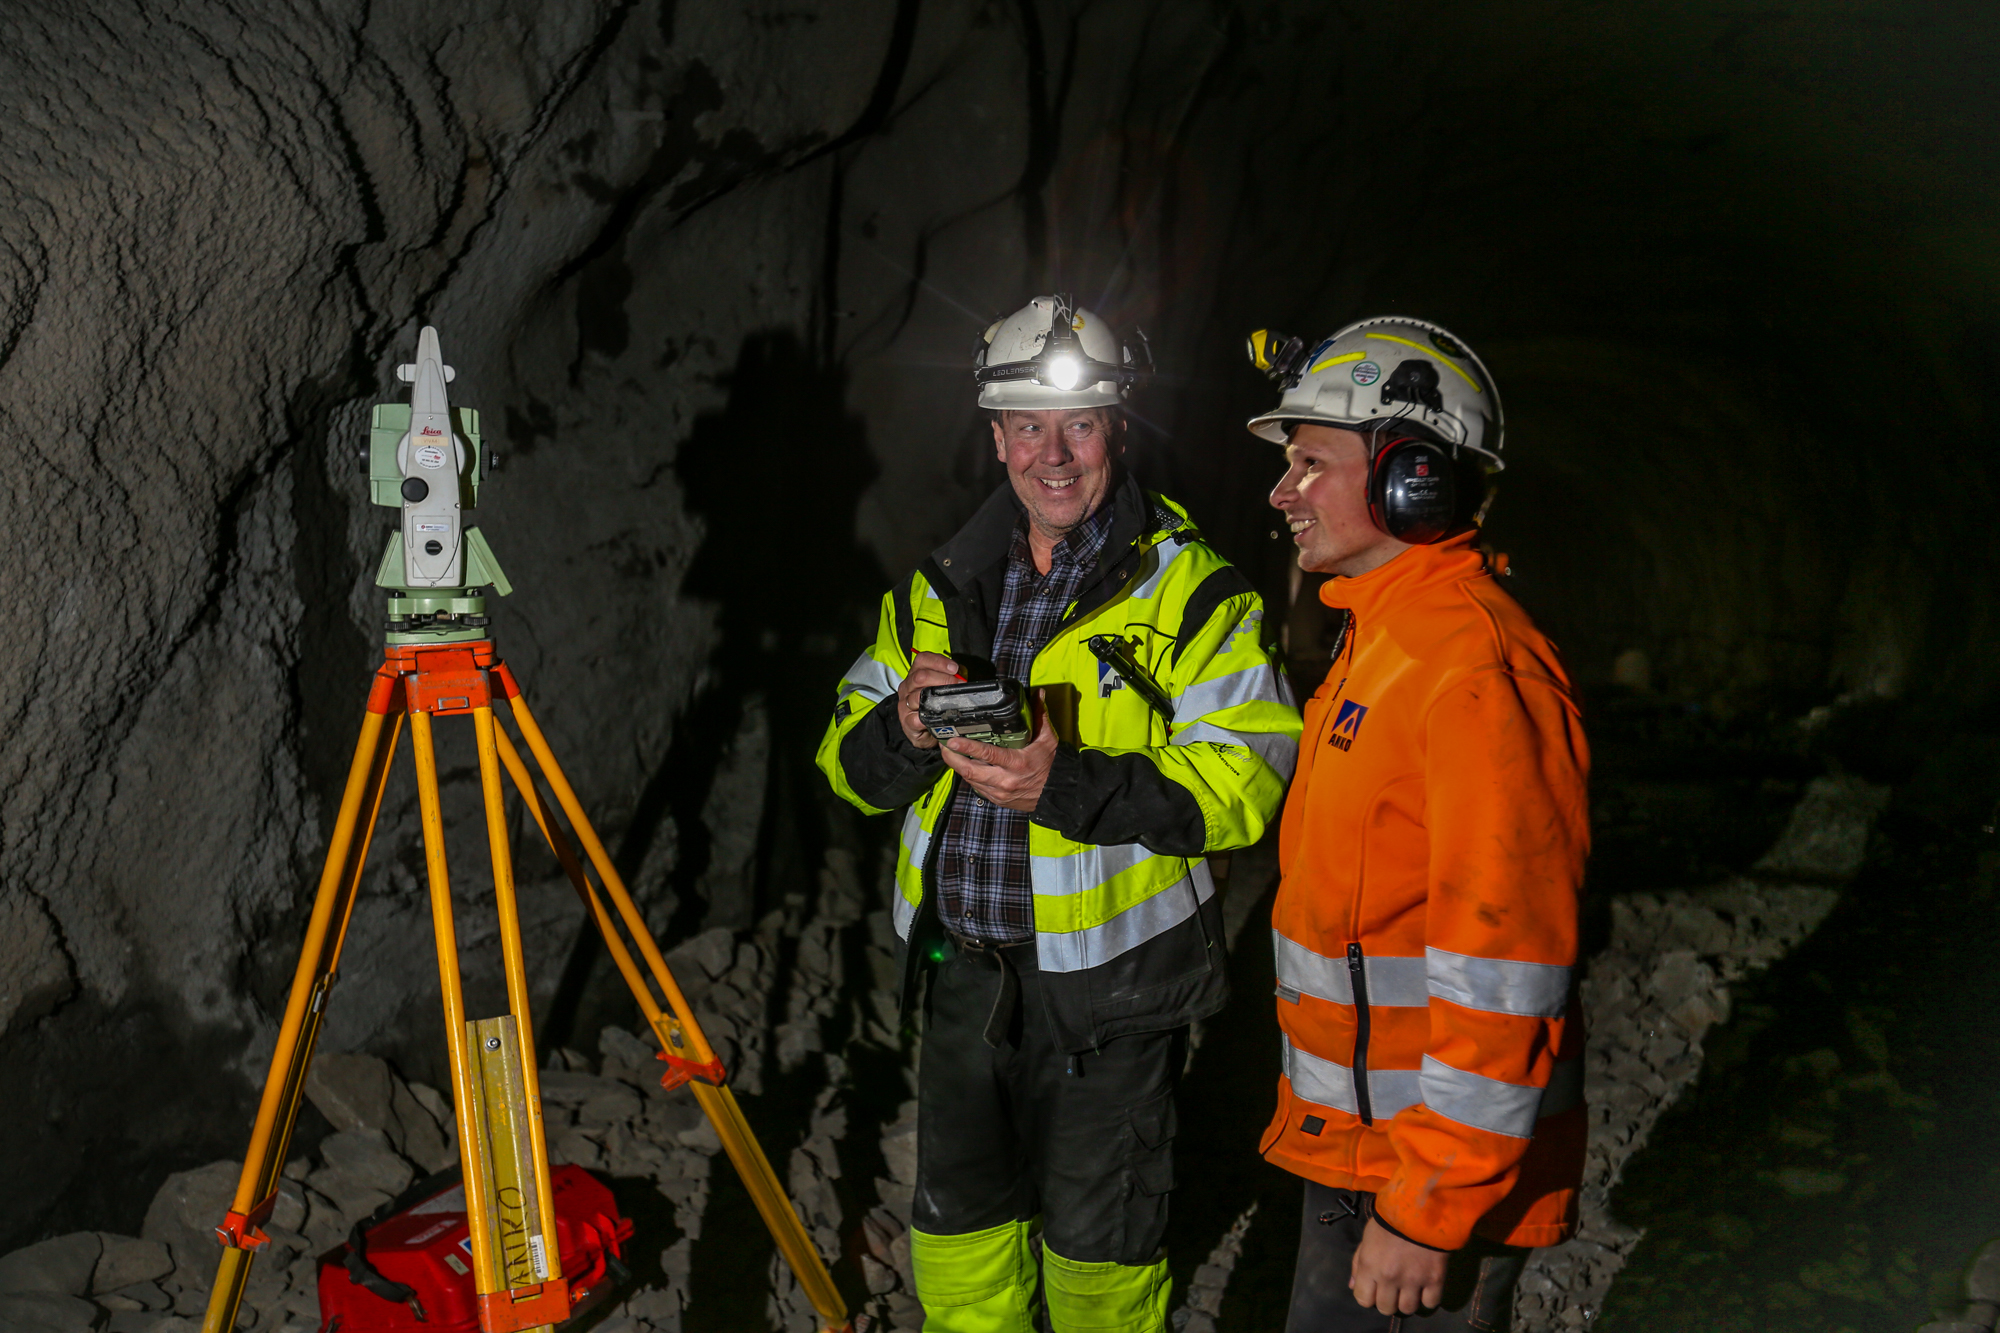  Stikkerne Einar Norstein og Yngvar Amlien fra ANKO har ansvaret for at alt går rette vegen og at tunnelen kommer fram dit den skal. 